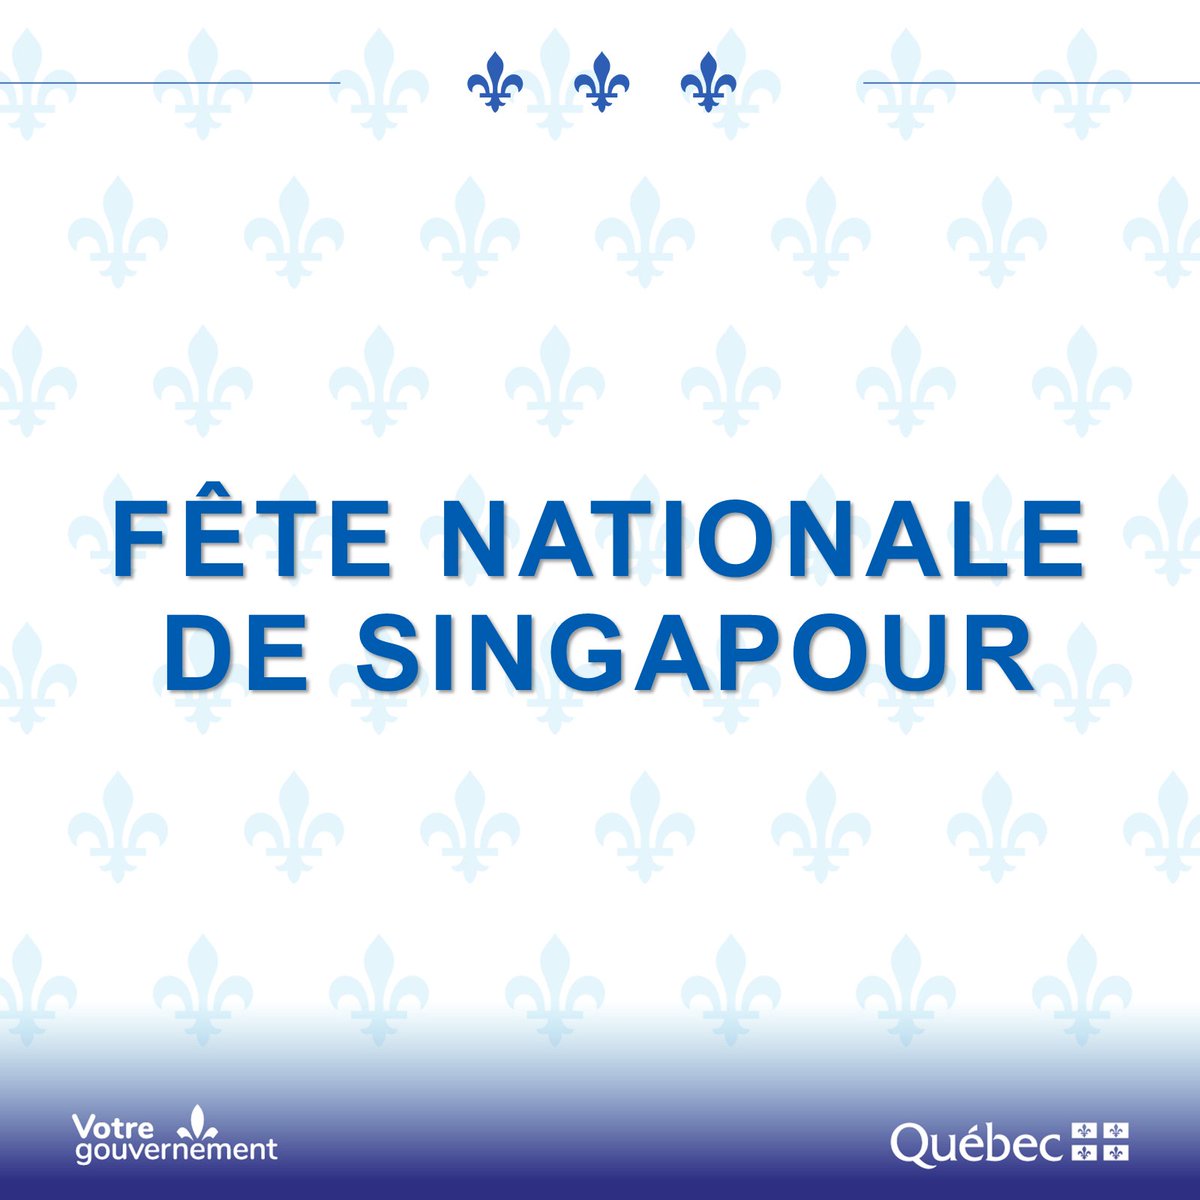 Bonne fête nationale aux Singapouriennes et aux Singapouriens! 🇸🇬 Notre bureau @QuebecSingapour est plus actif que jamais pour y faire prospérer nos relations. 🤝🎉